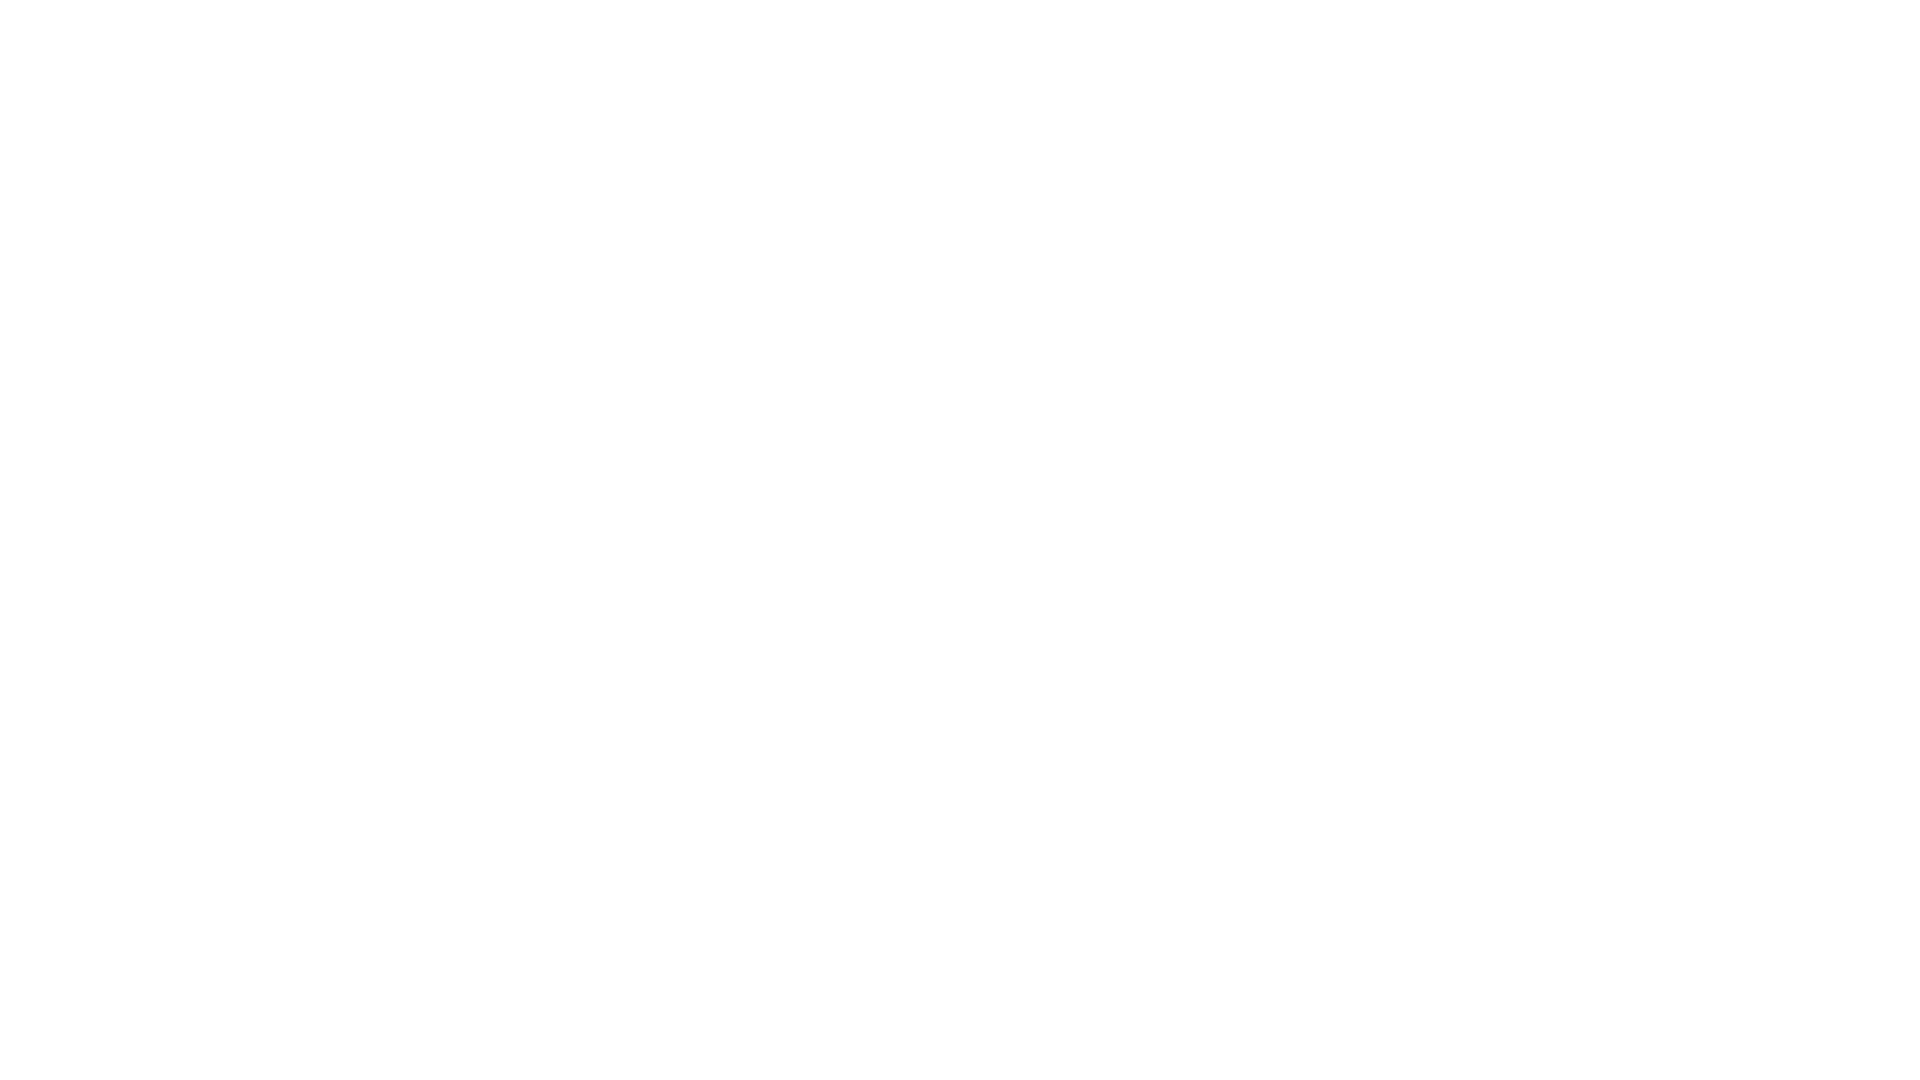 HAYATIN_ICINDEN_BELGESELI_LOGO_BEYAZ